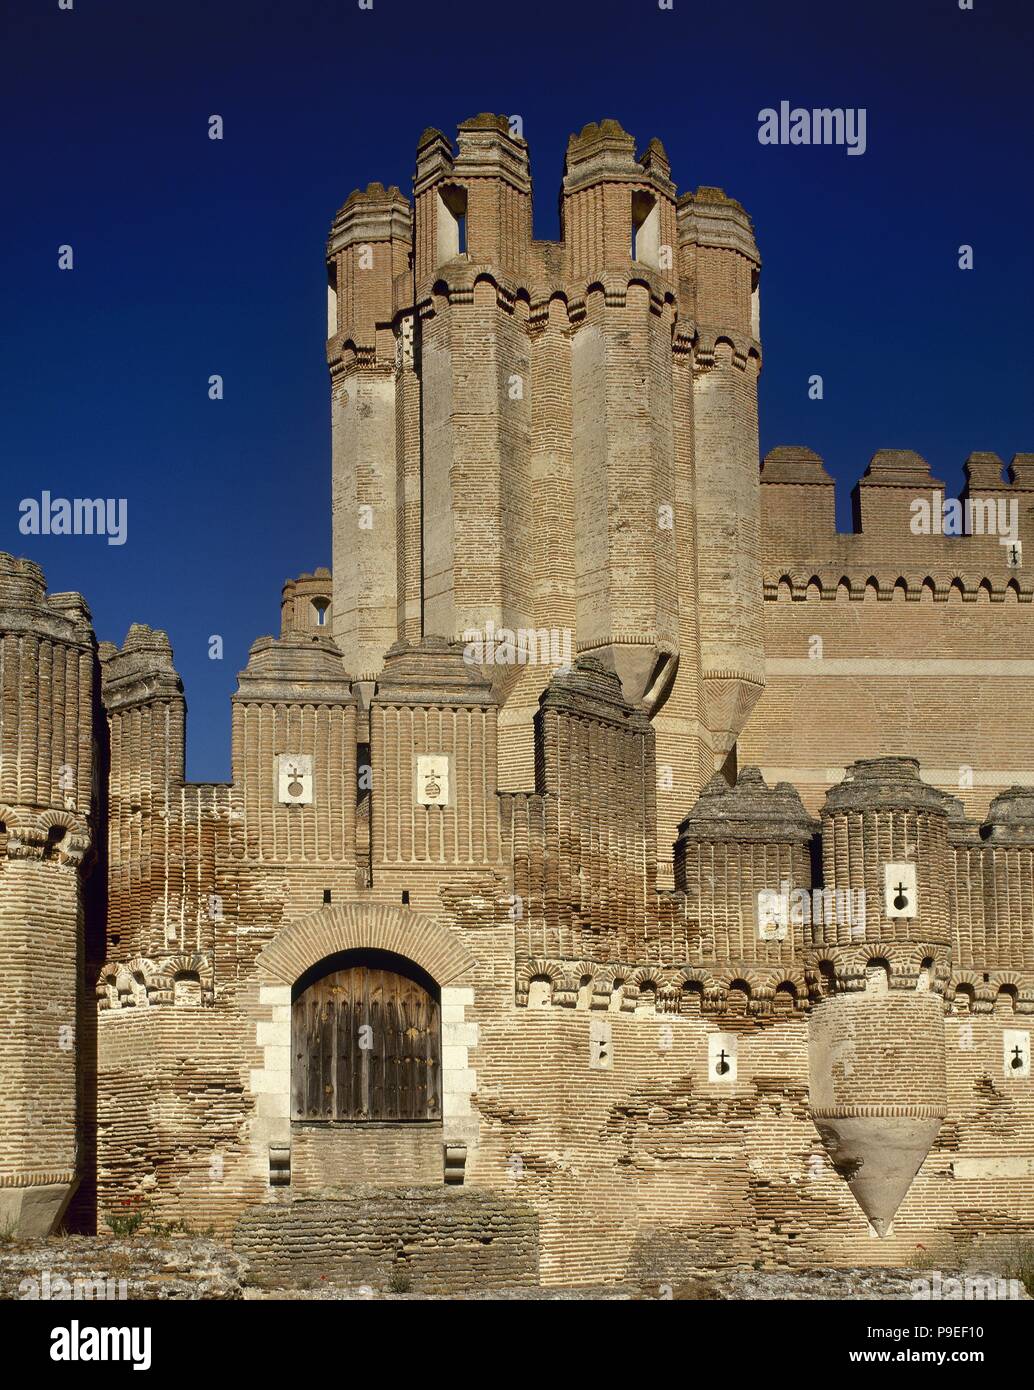 Spagna. Castello di coca. Xv secolo. Stile mudéjar. Esterno. Dettaglio. Foto Stock